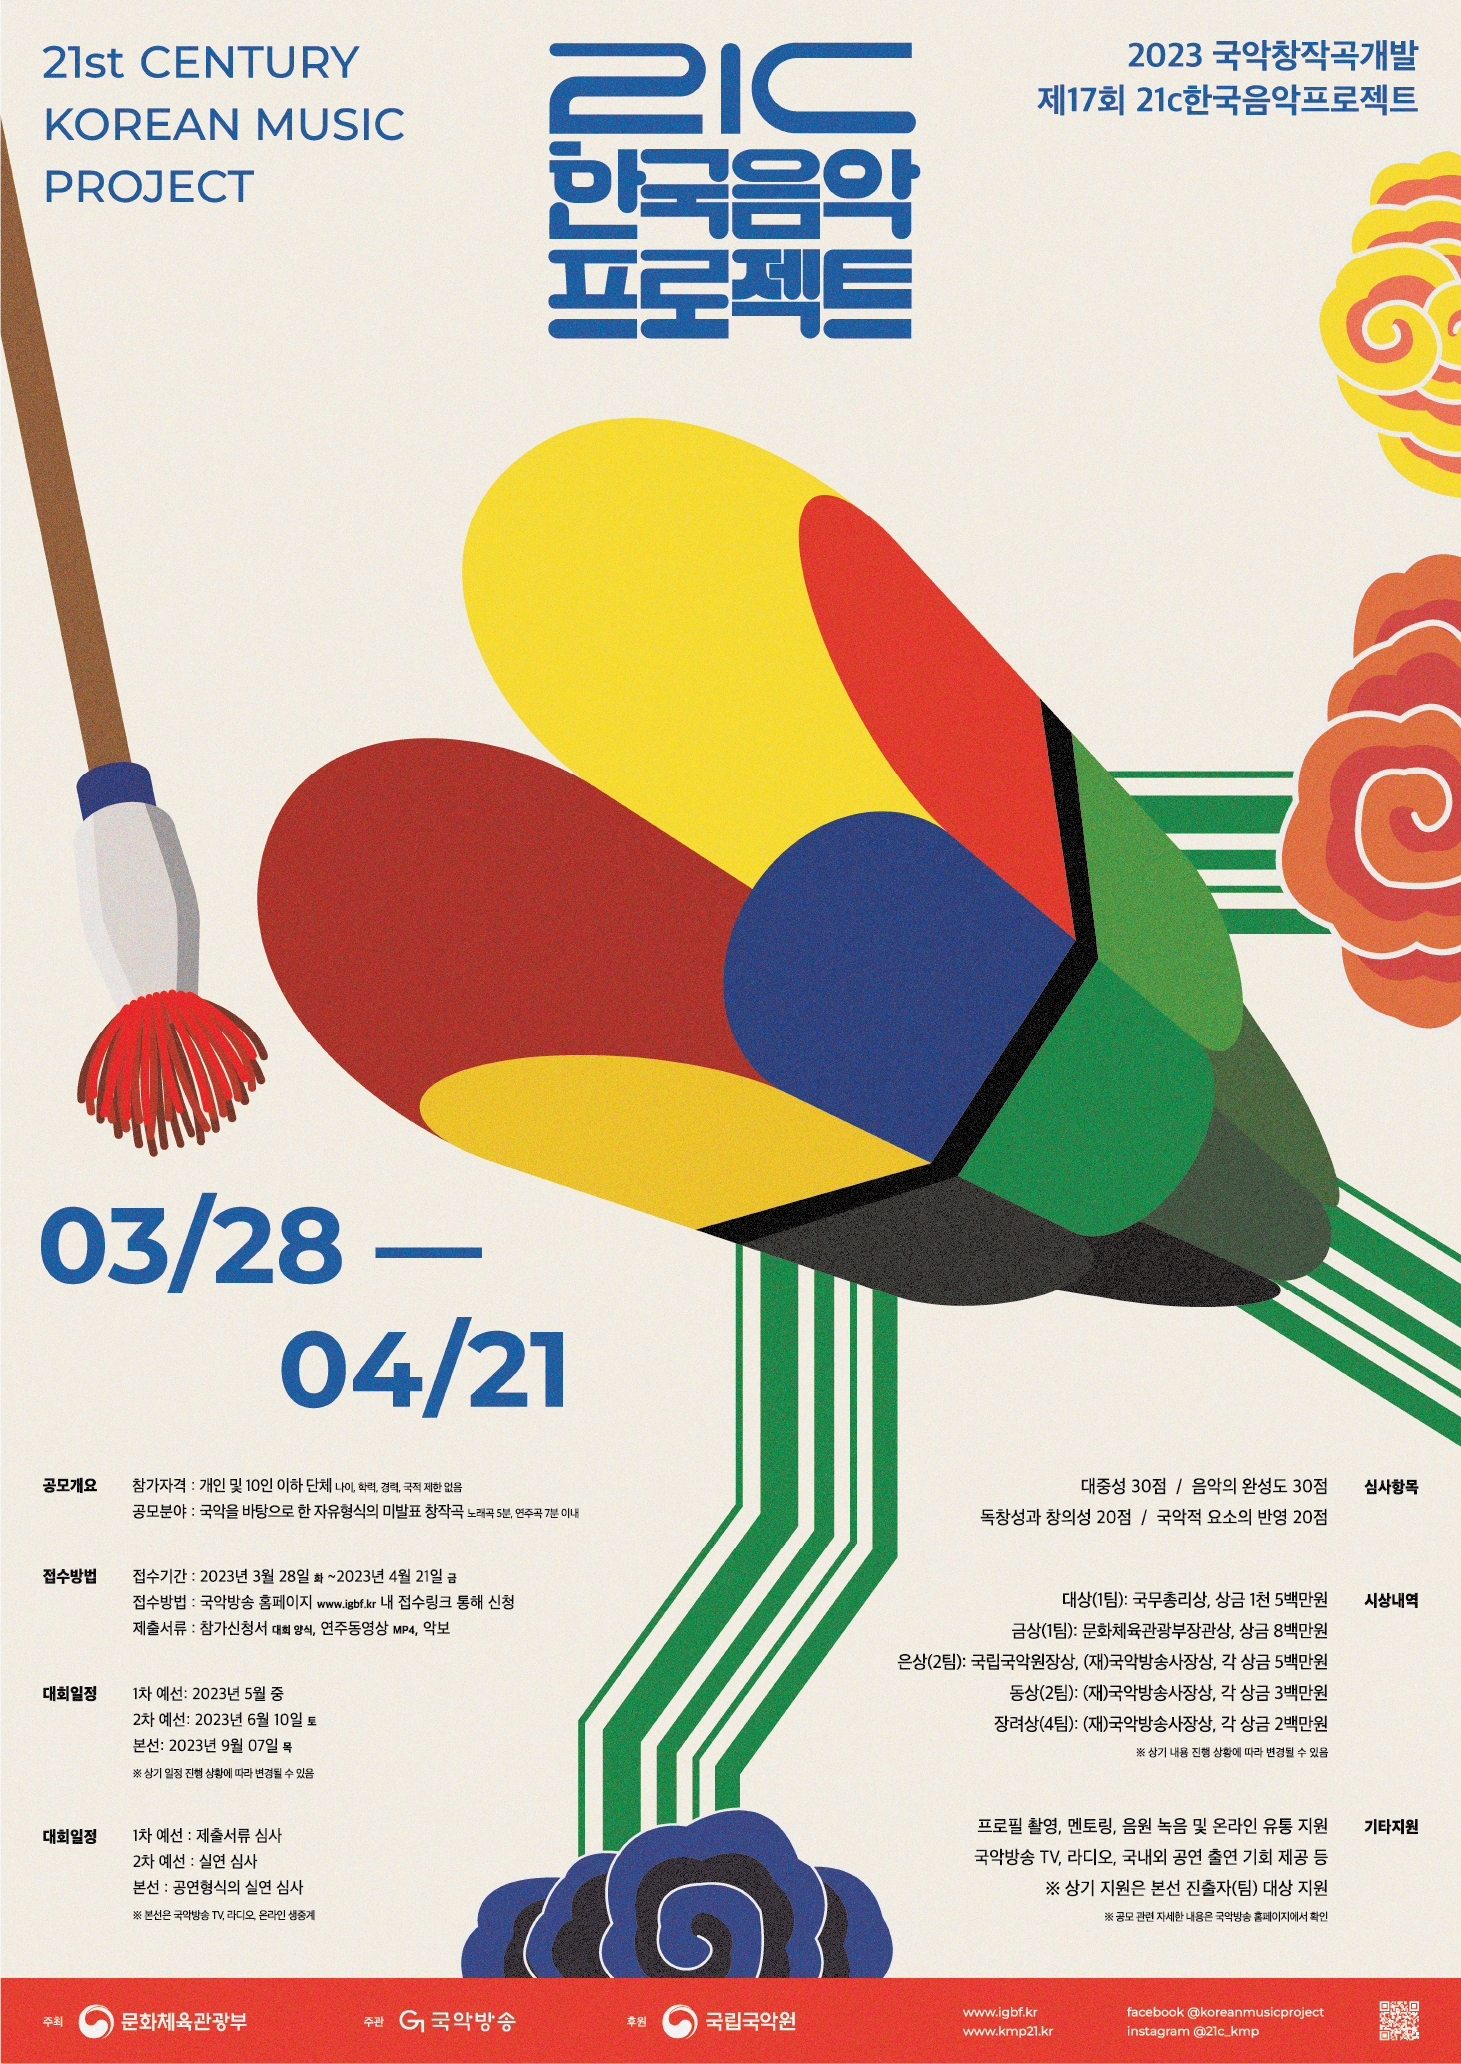 2023년도 21C 한국음악프로젝트 포스터